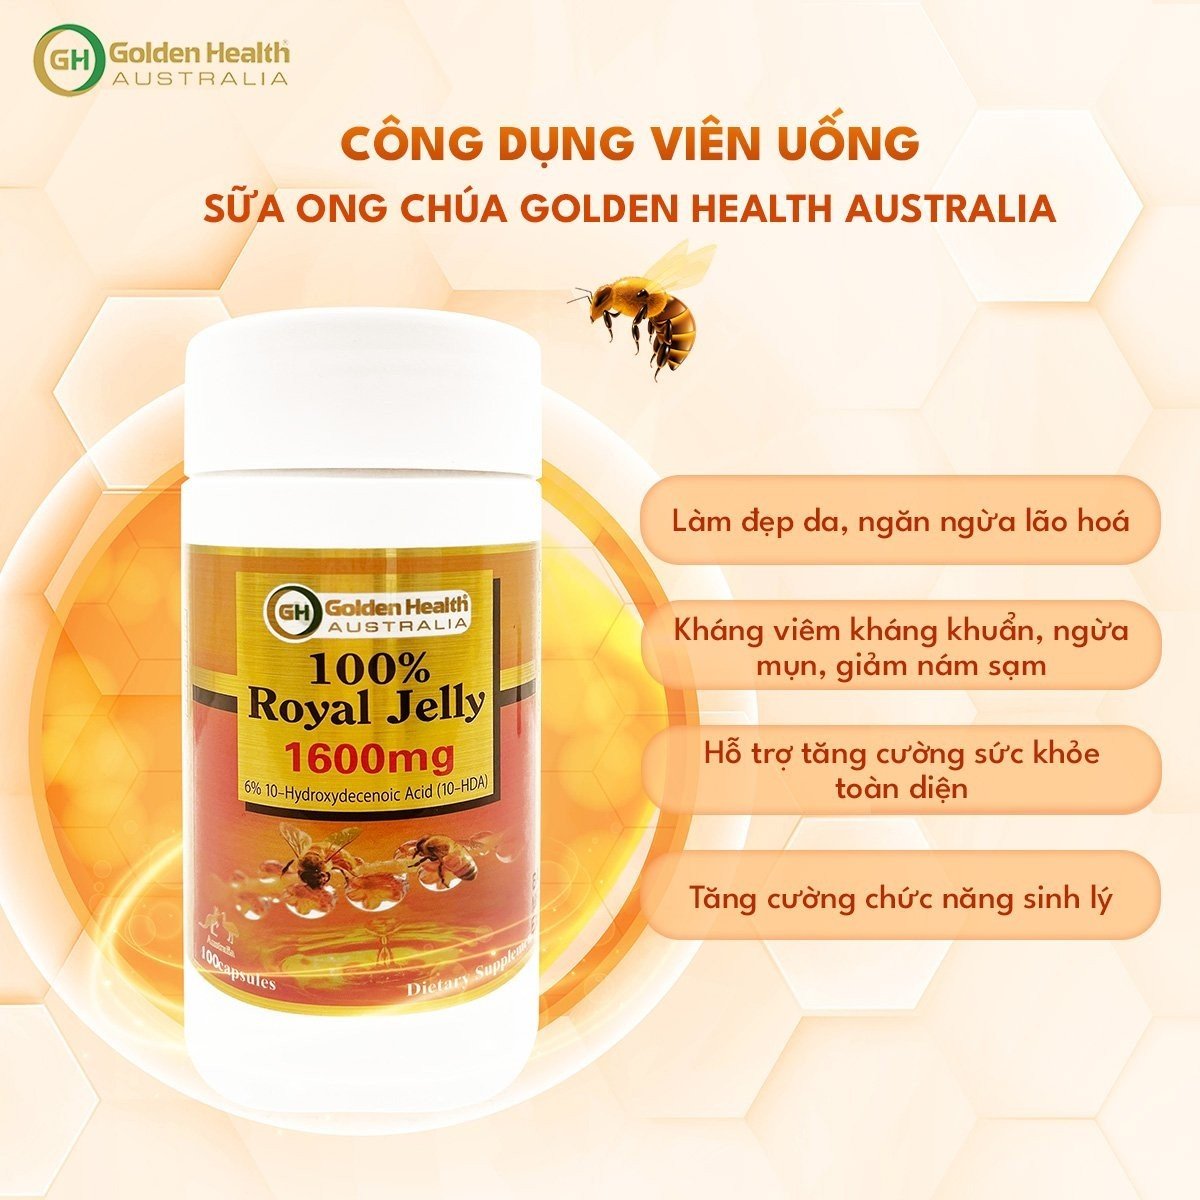 Viên Uống Sữa Ong Chúa Golden Health Royal Jelly 1600mg Hộp 365 Viên, Giúp Da Chống Lão Hóa, Nám, Sạm, Chống Mất Ngủ, Bảo Vệ Sức Khỏe Toàn Diện - Nhập Khẩu Chính Ngạch Từ Úc